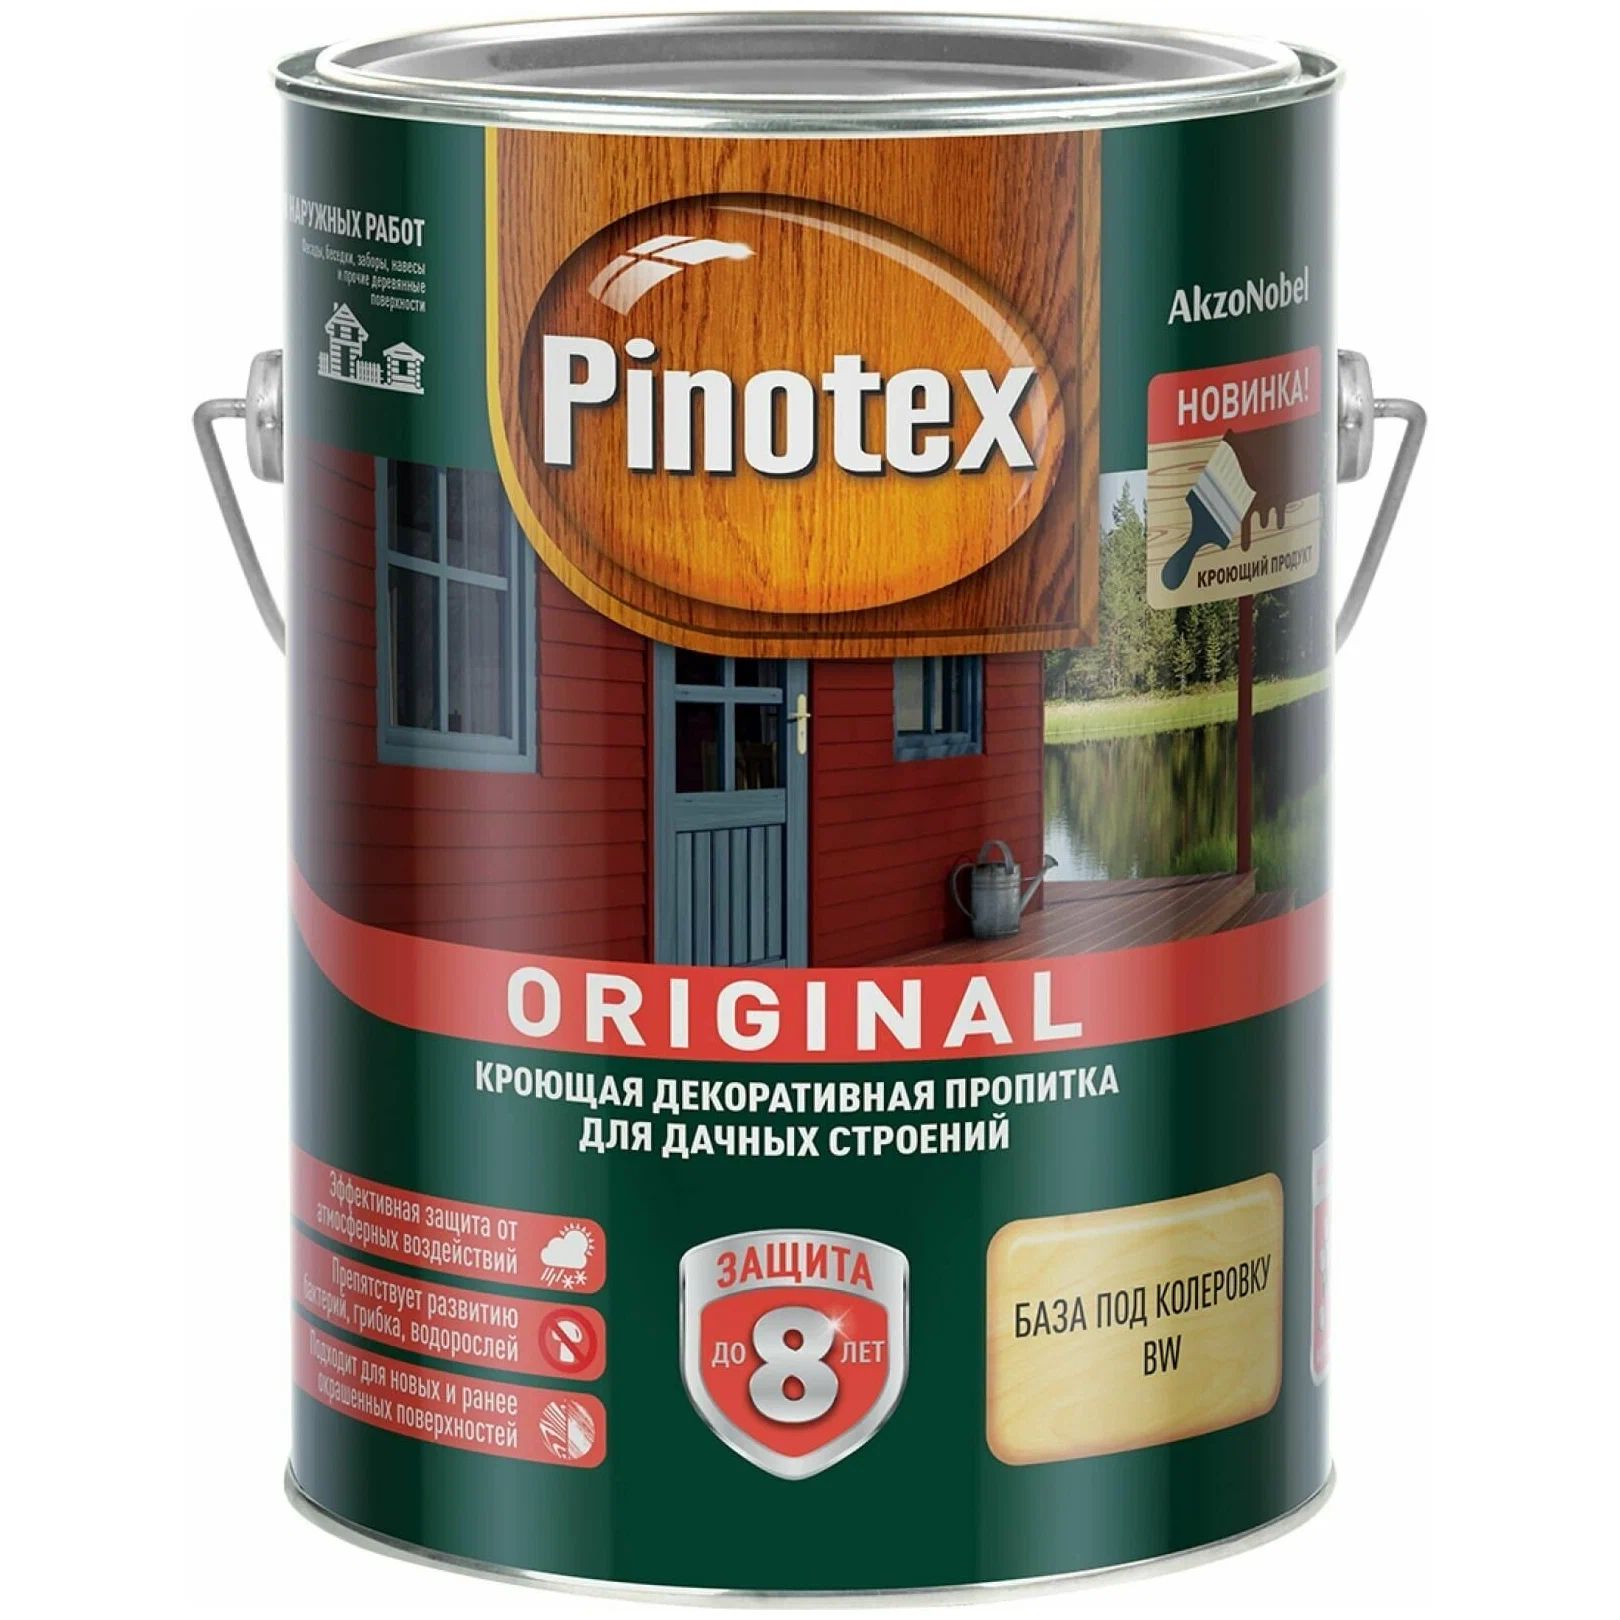 Пропитка для дерева Pinotex Original, база под колеровку, BW, 2,7 л